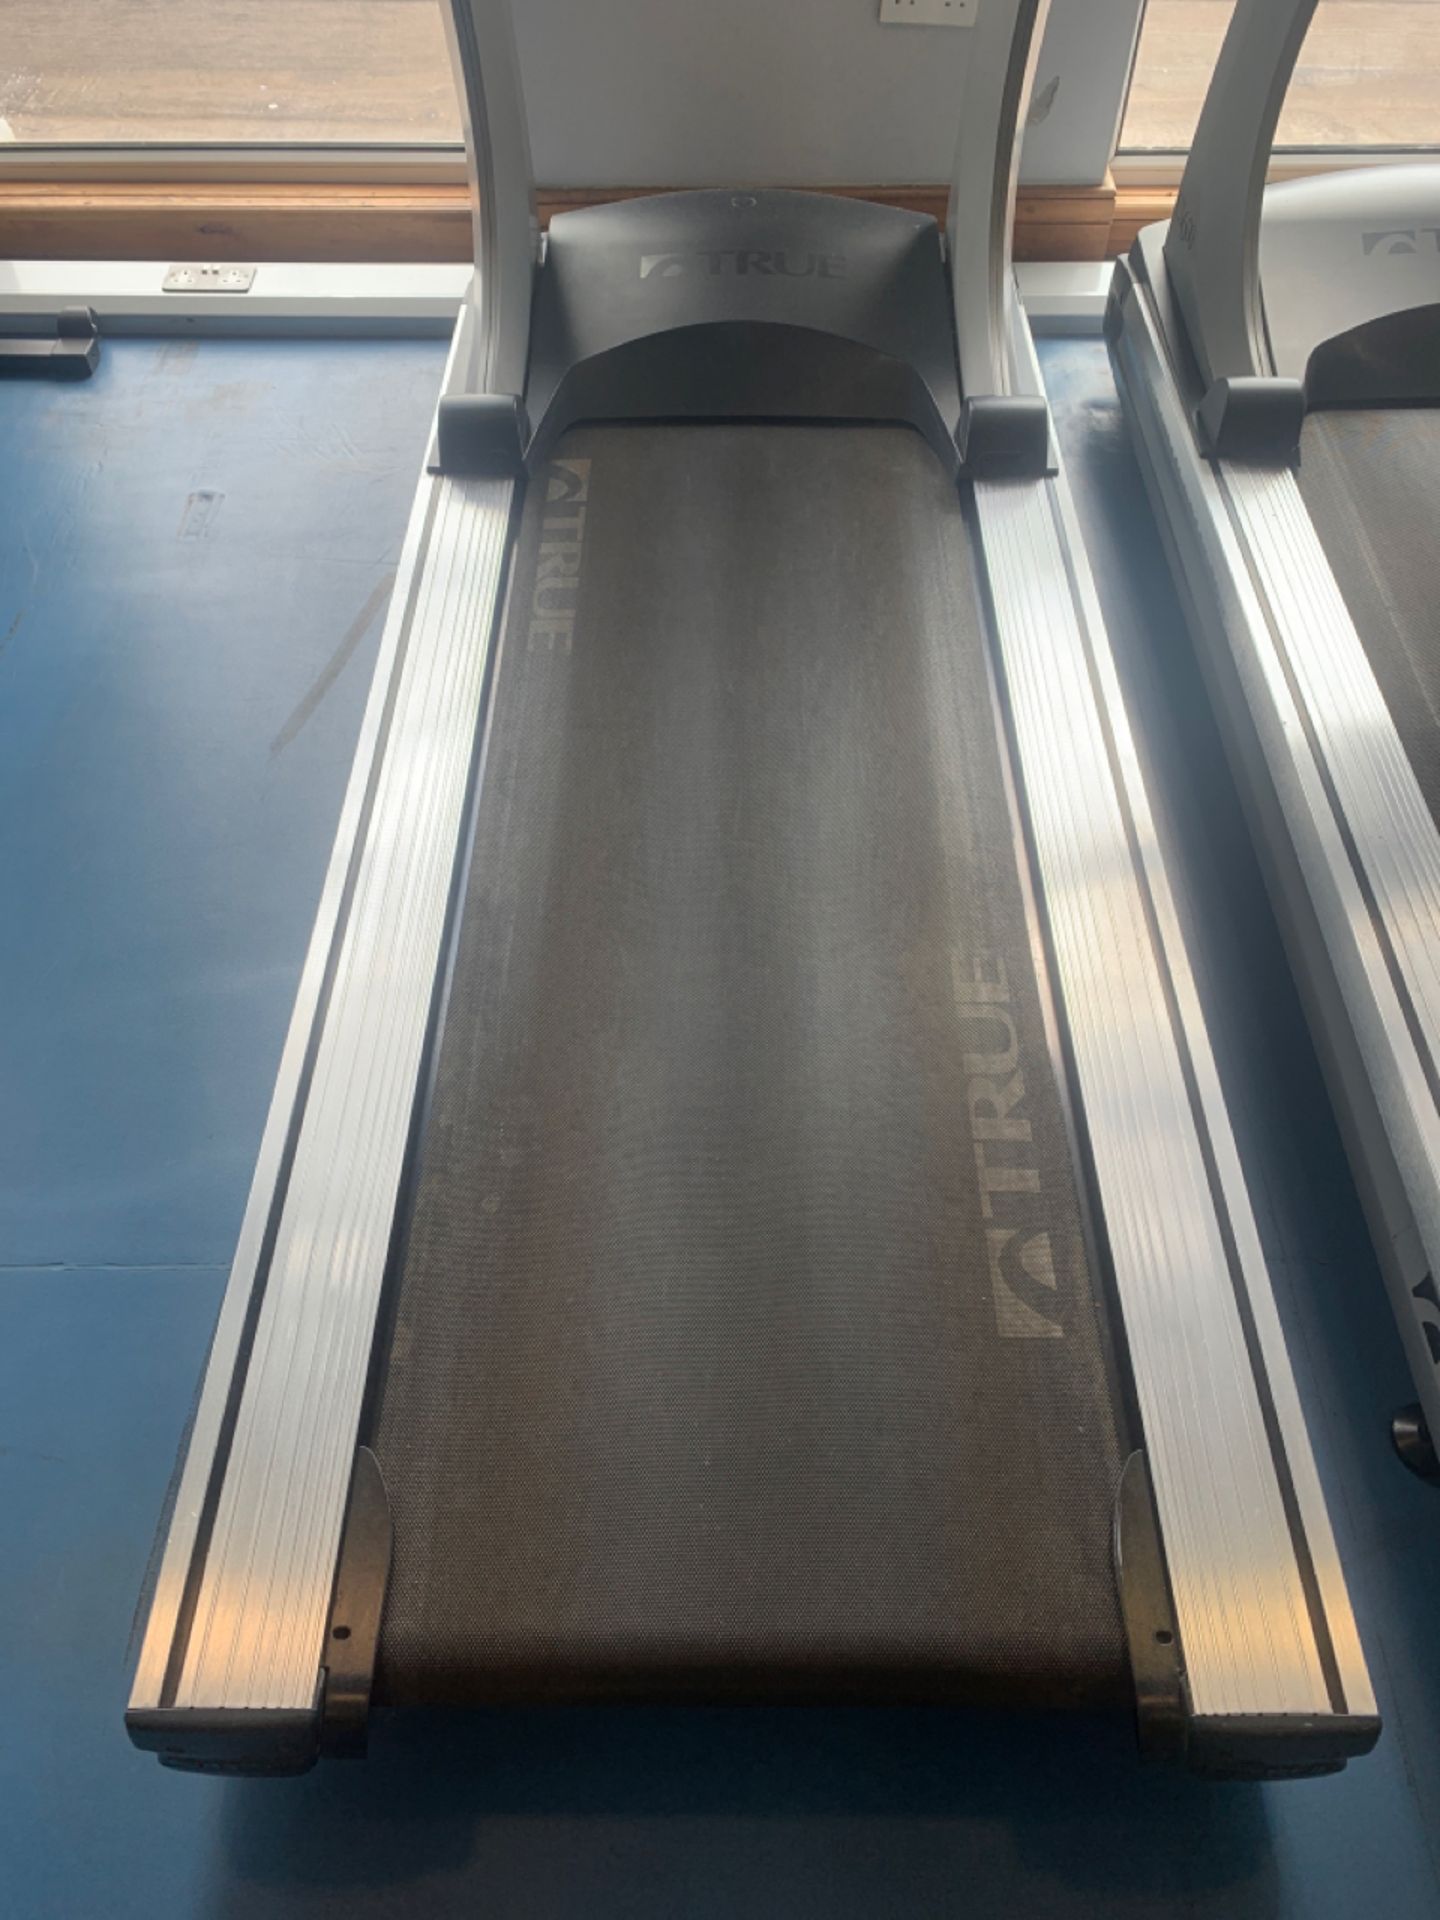 True Fitness Treadmill - Image 3 of 4